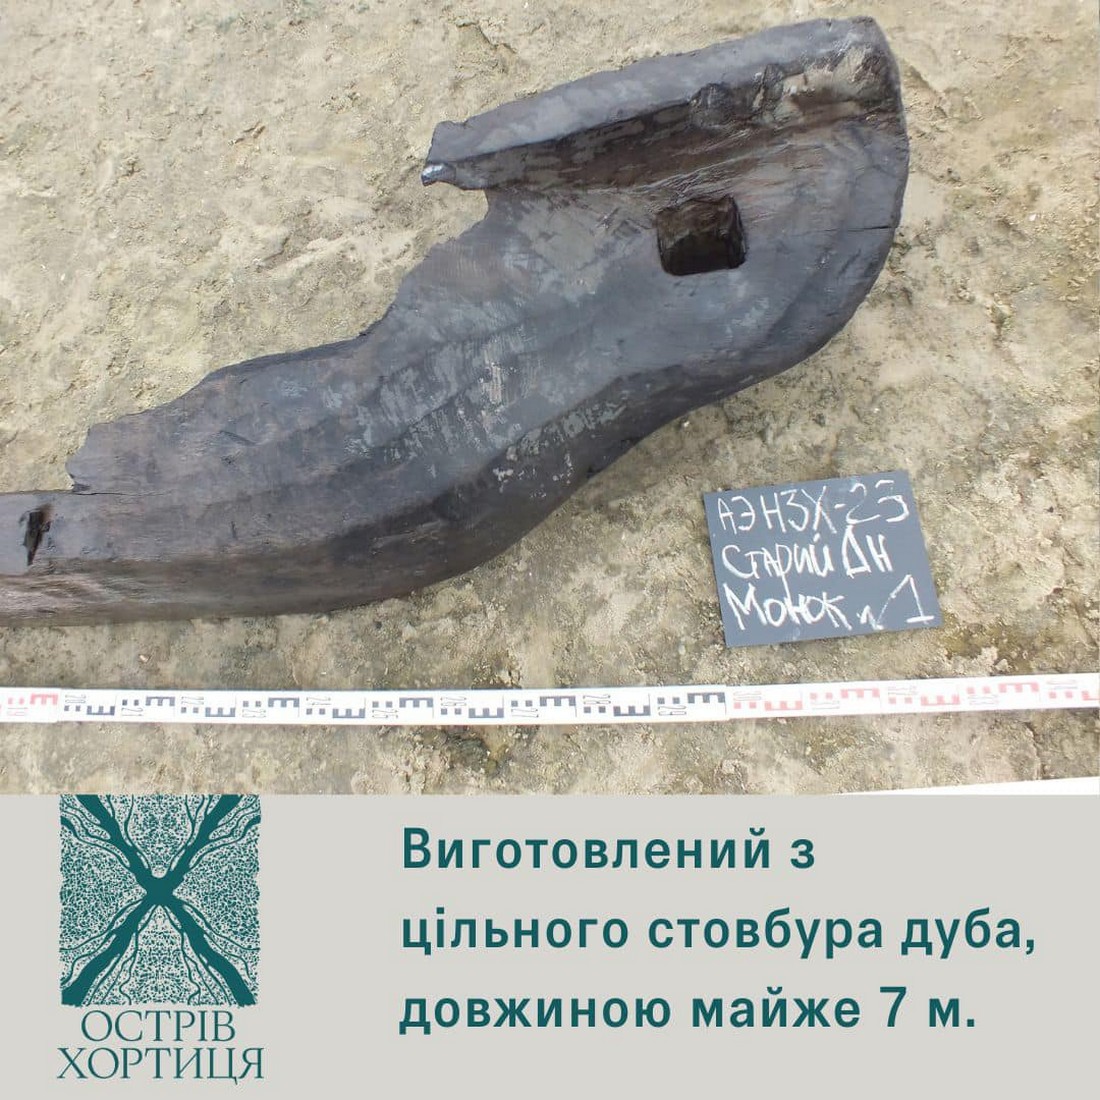 Ядро 18 століття, кований костиль, довбаний човен: що вже знайшли і що реально знайти на дні Каховського водосховища